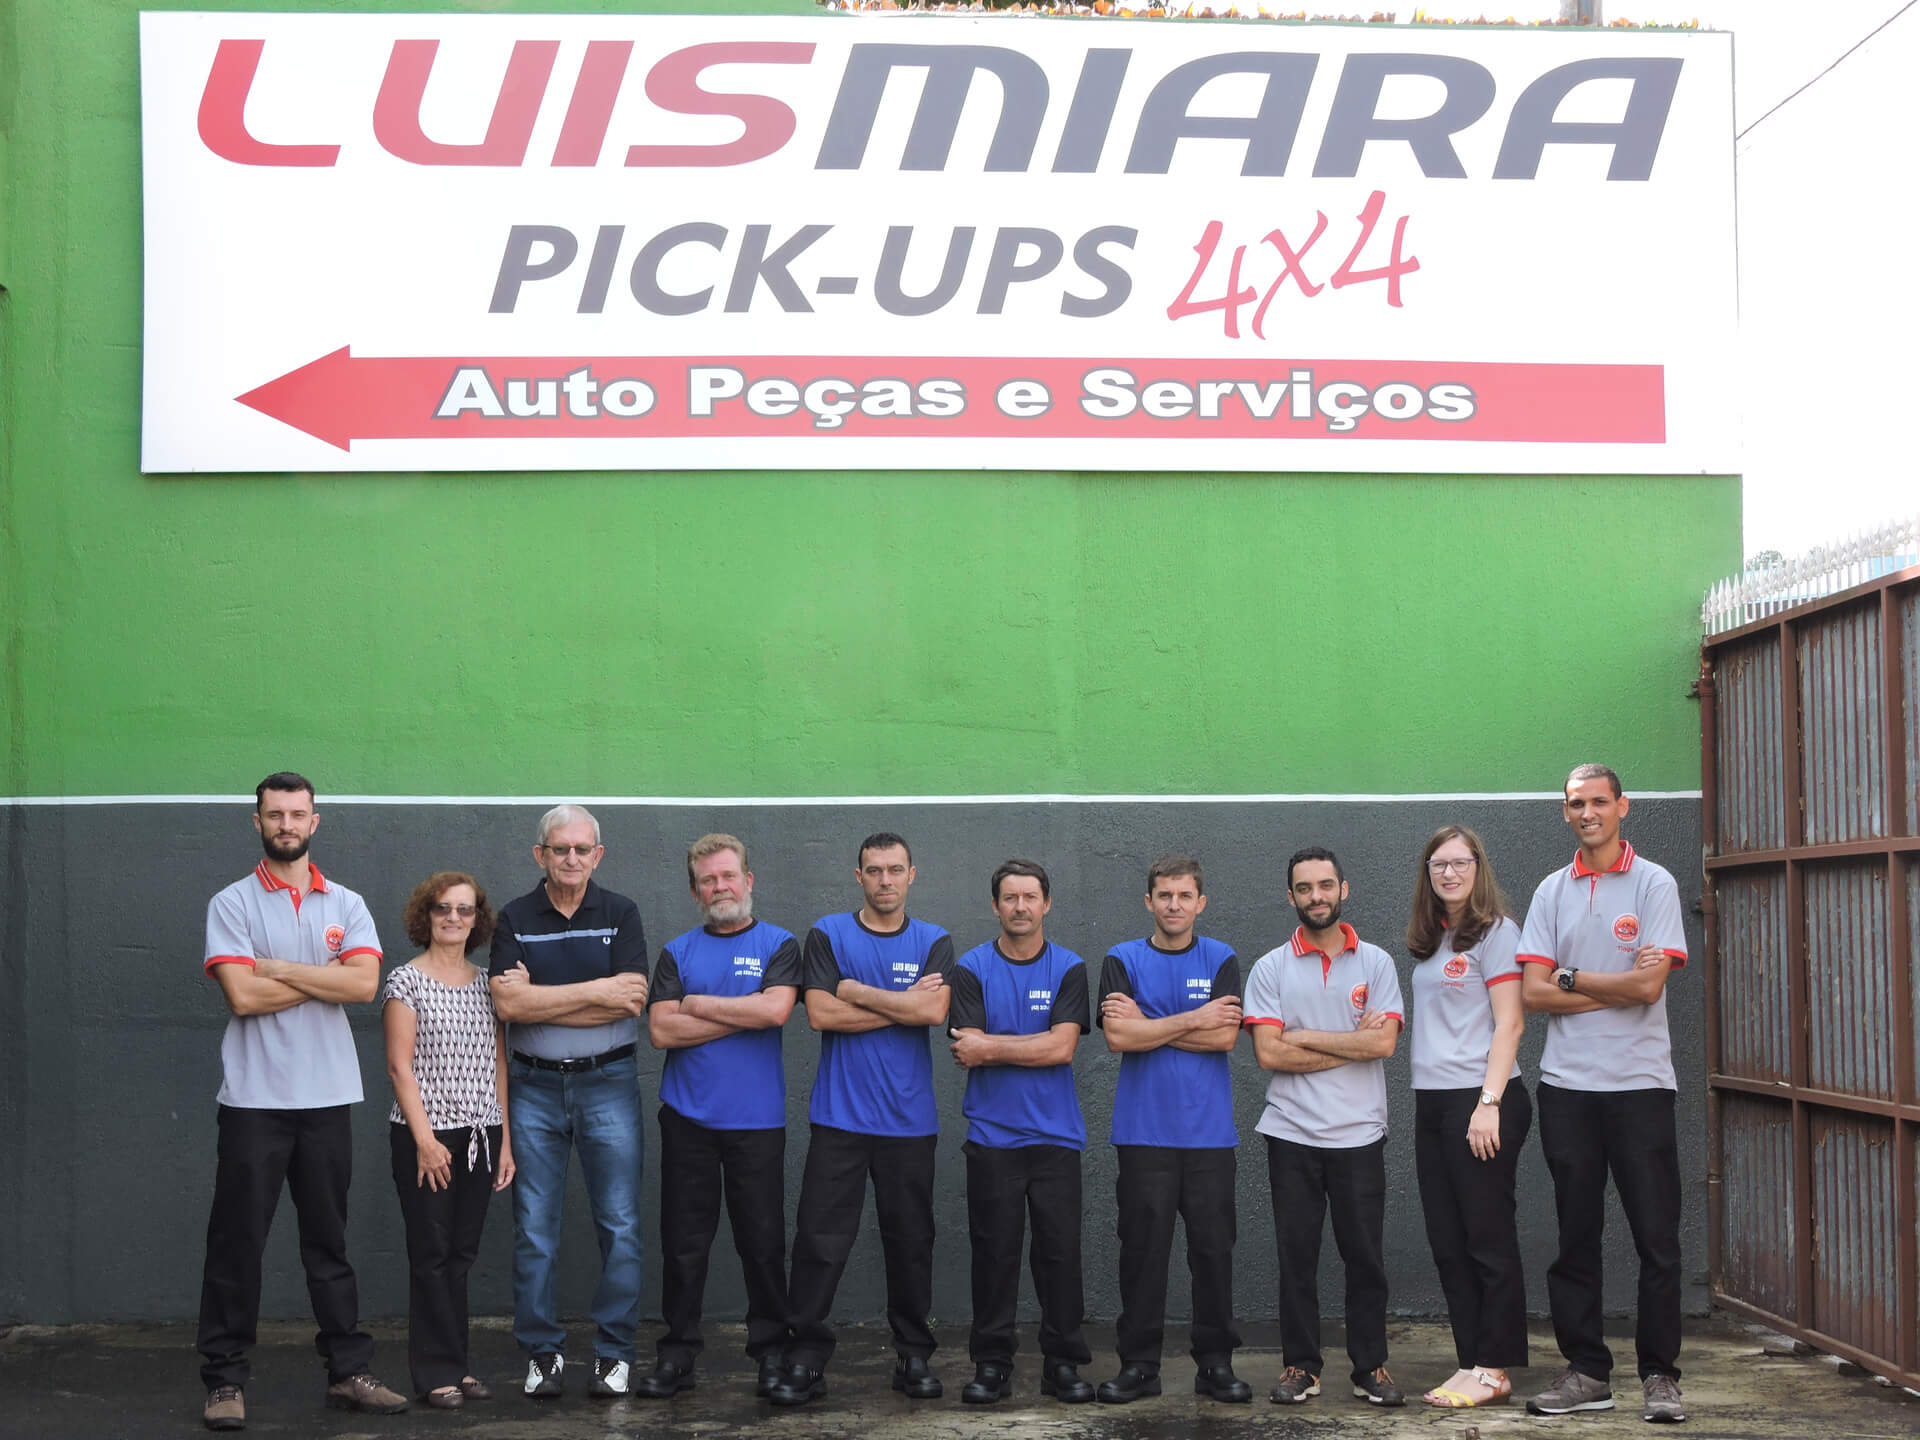 Equipe Luis Miara PickUps